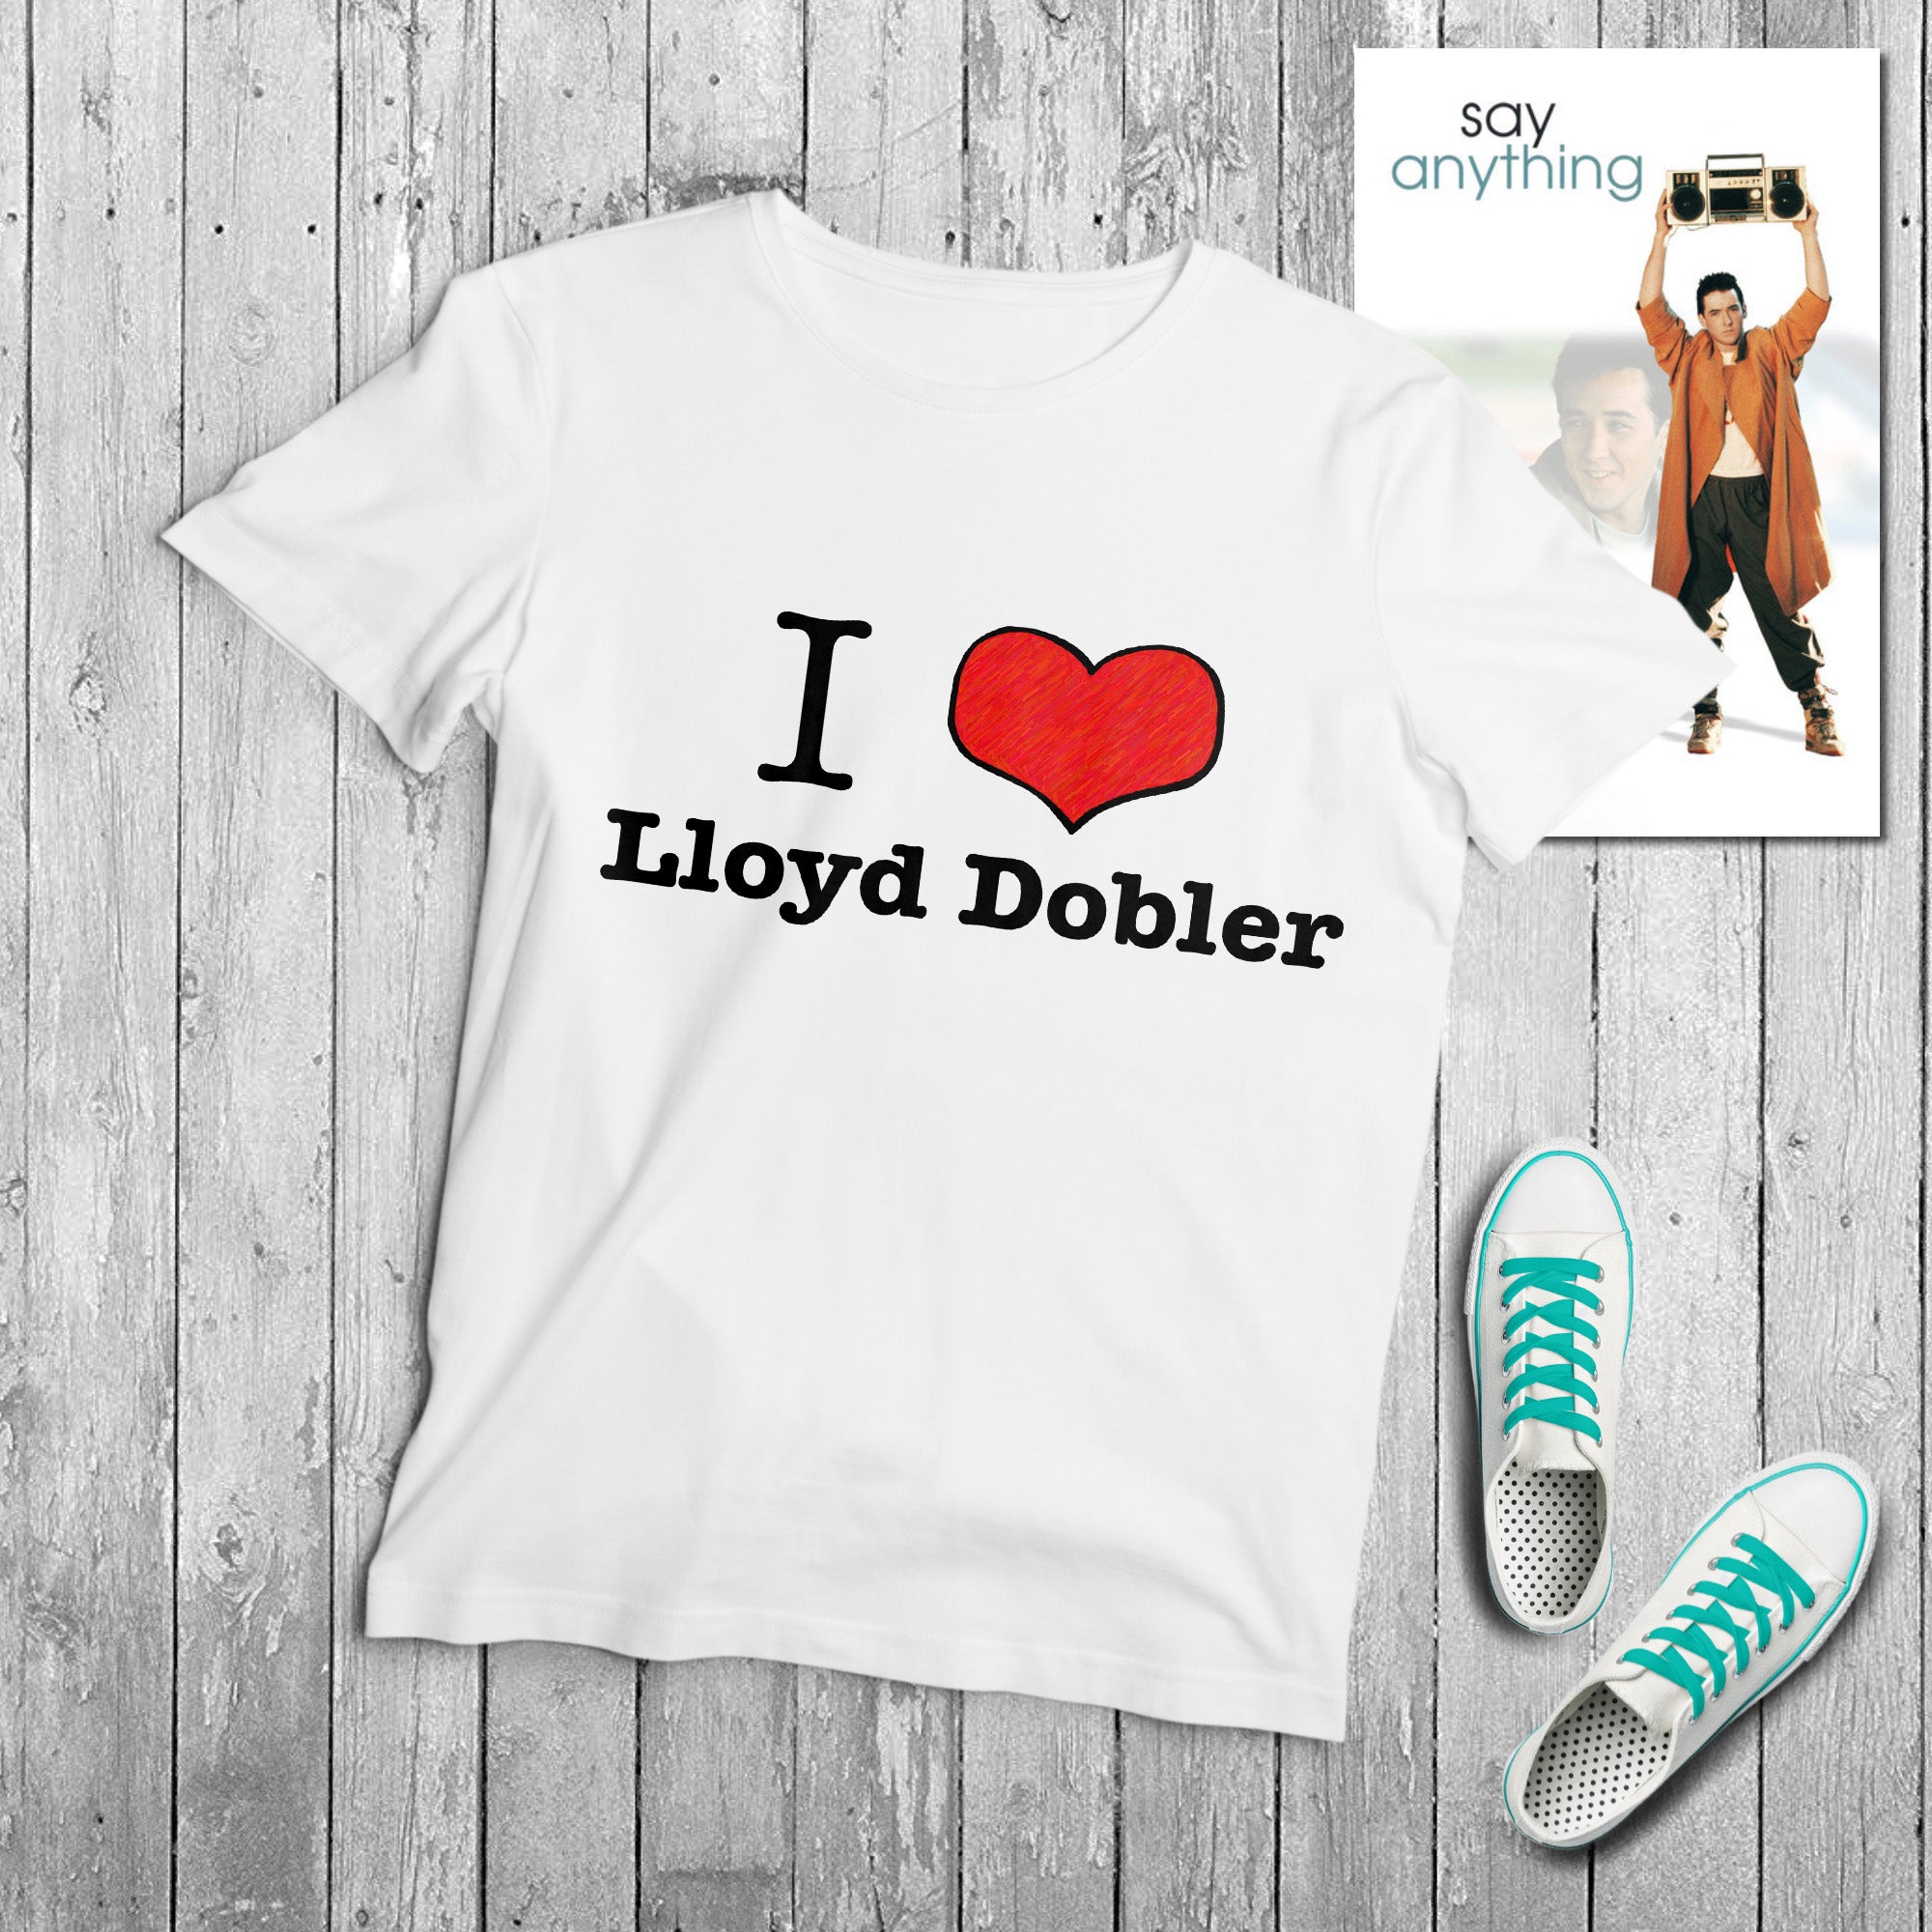 SAY ANYTHING  "I HEART Lloyd Dobler" - Tshirt